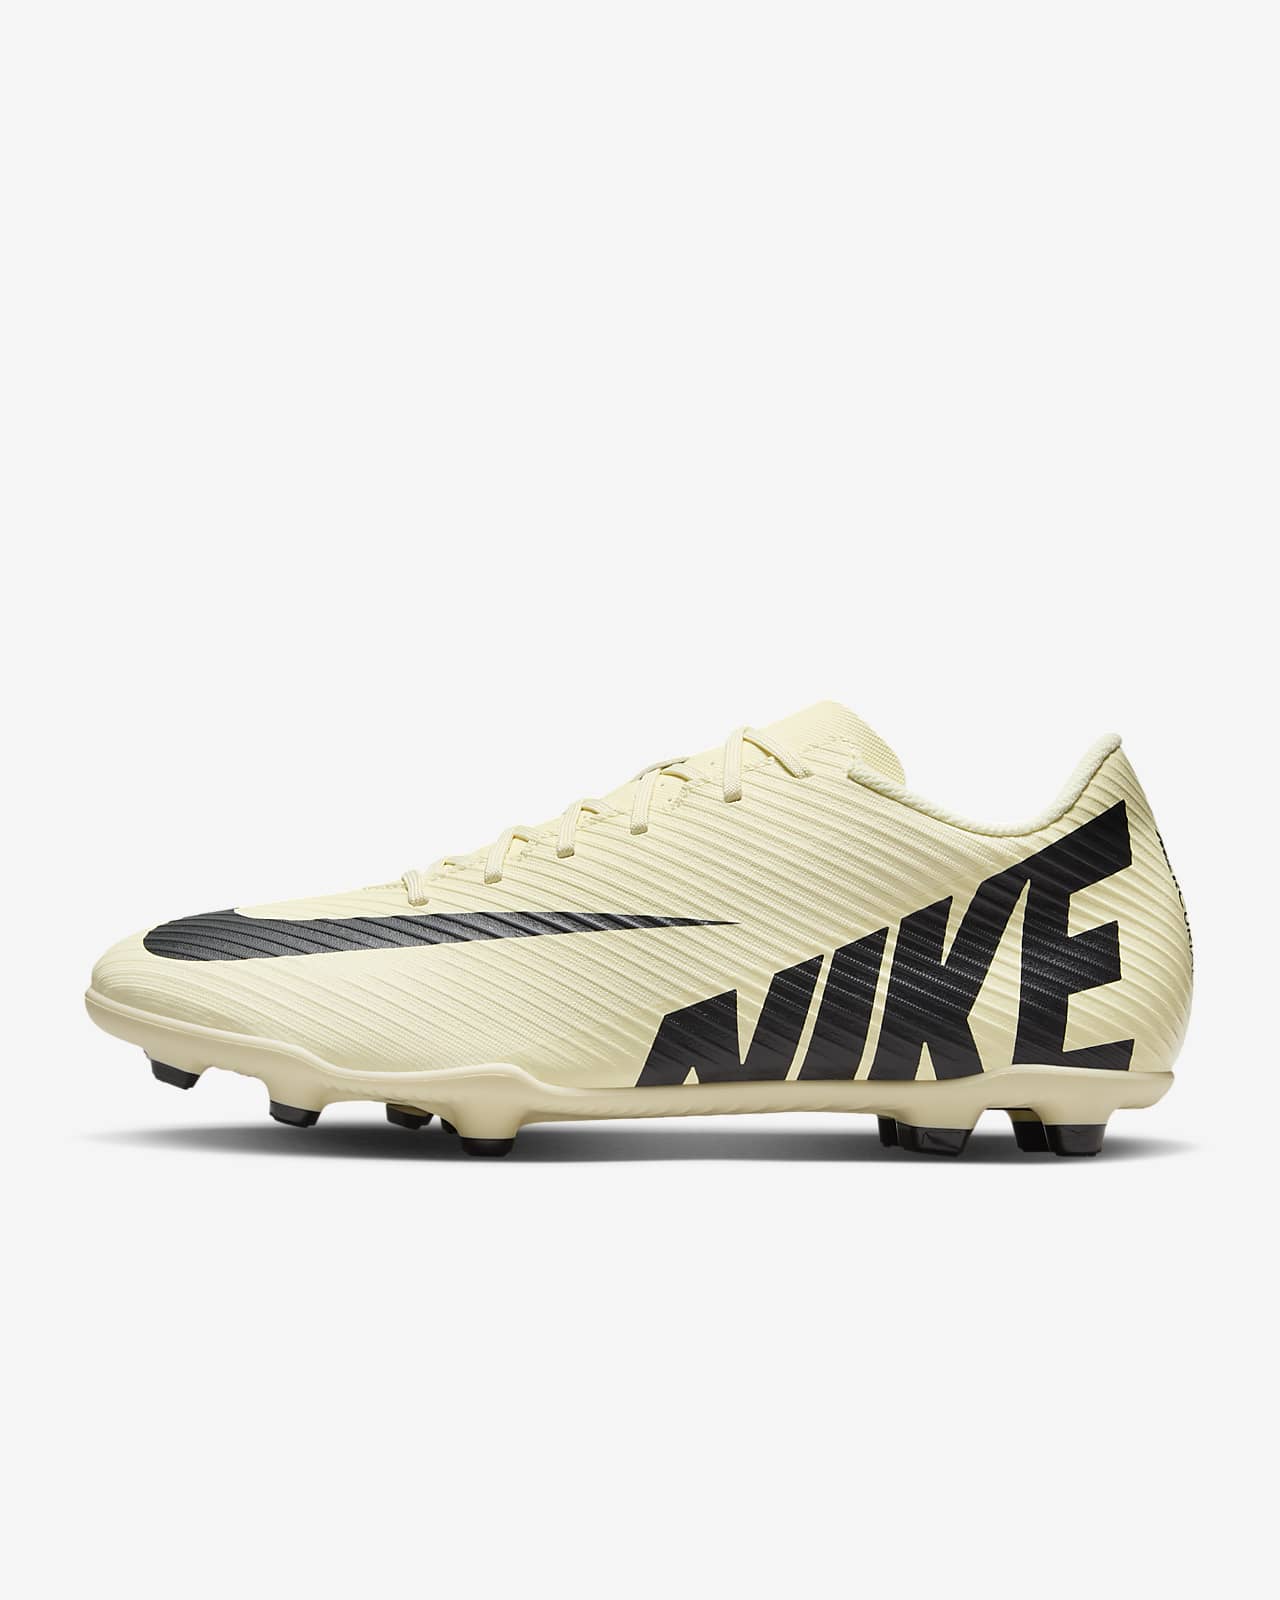 Nike Mercurial Vapor 15 Club-fodboldstøvle (low-top) til flere typer underlag